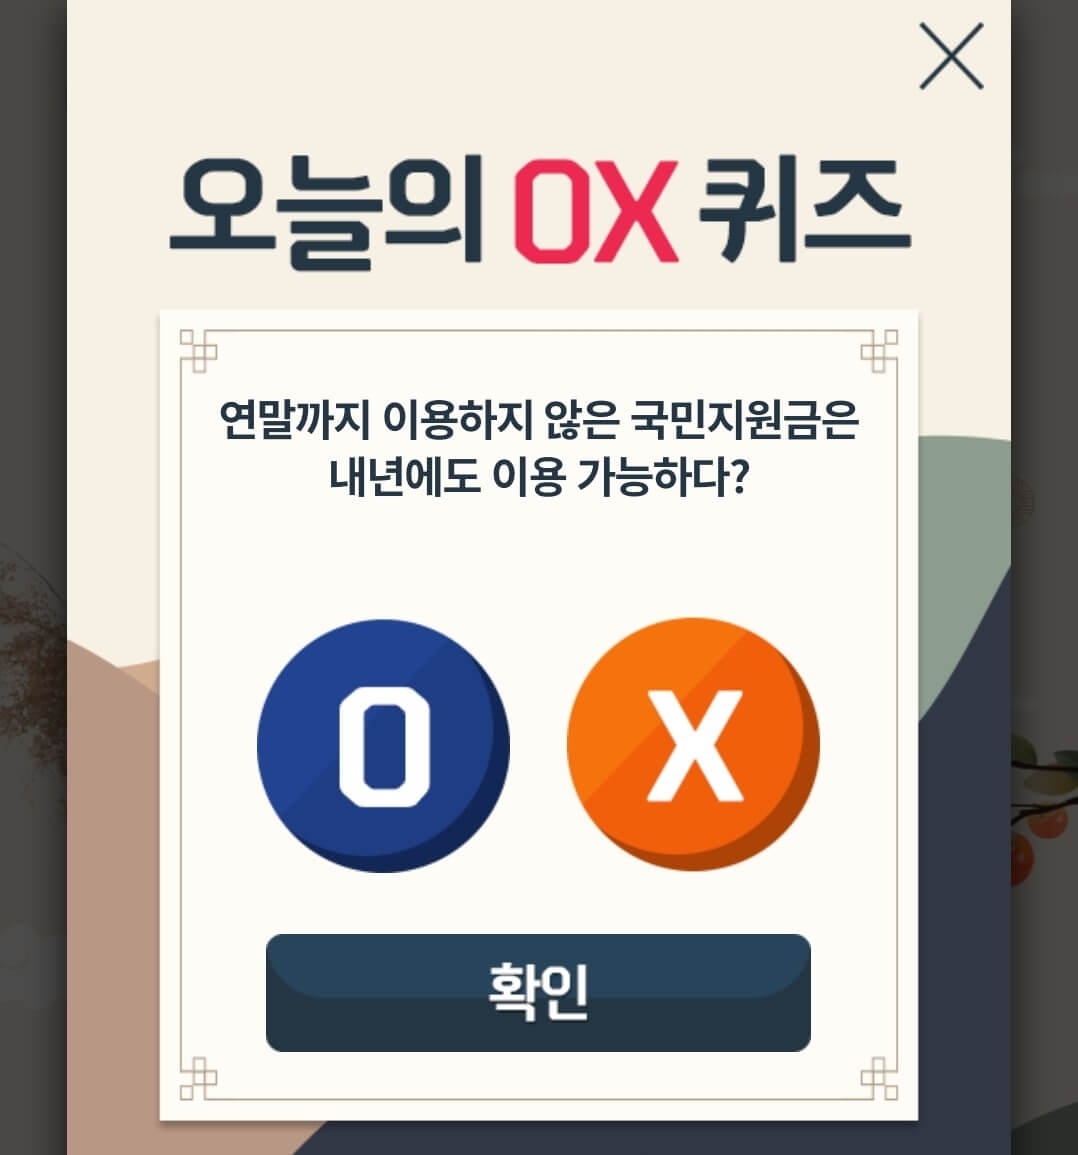 9월10일 앱테크 신한 OX 퀴즈 정답 